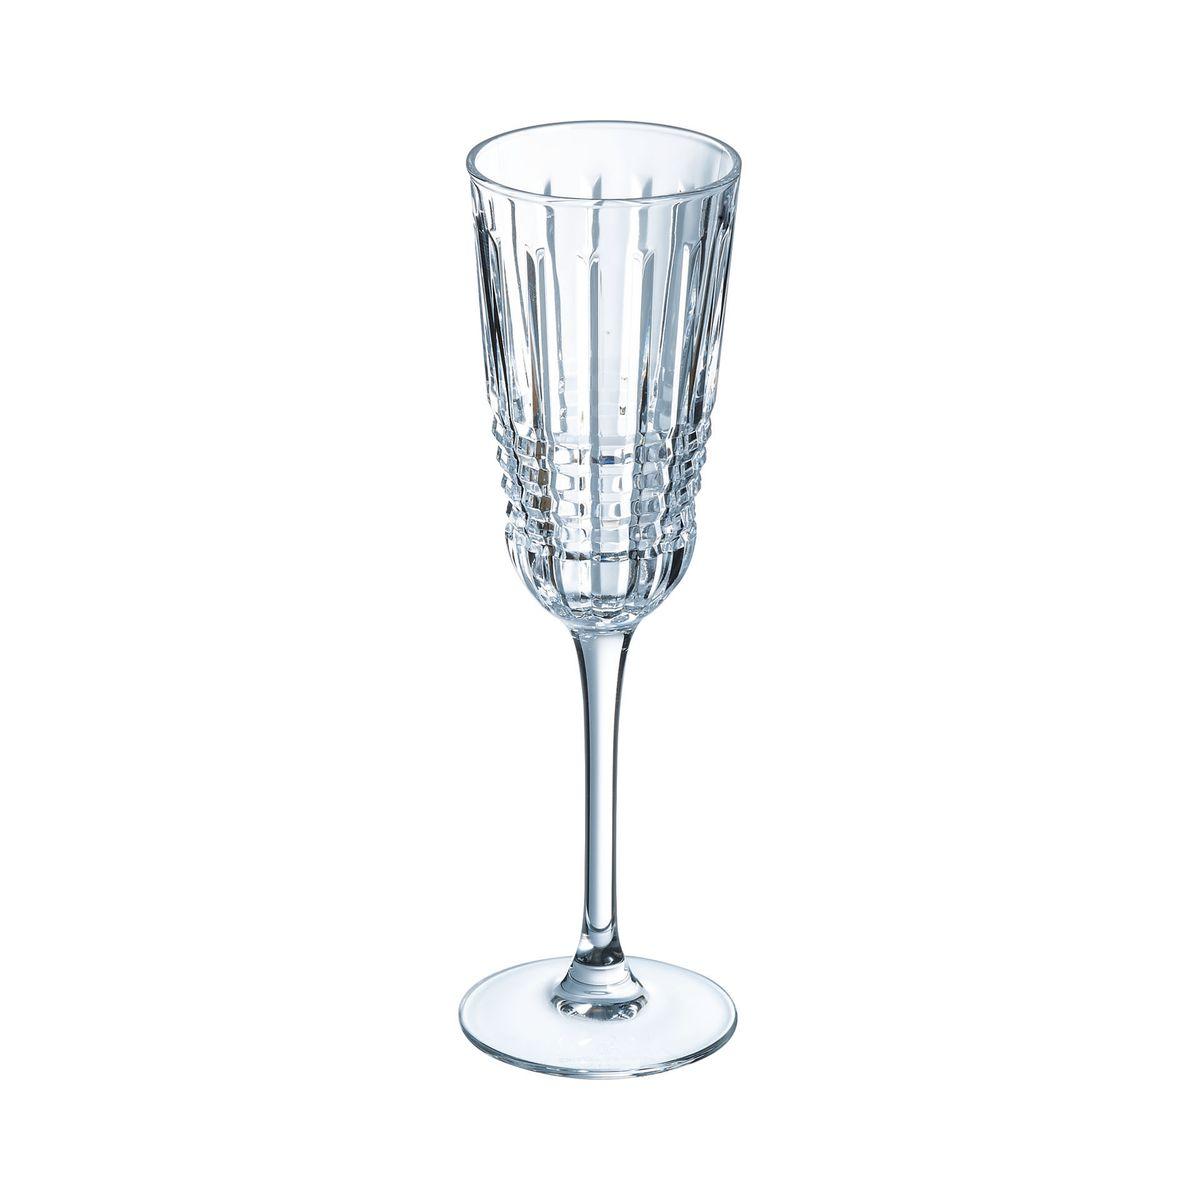 6 flûtes à champagne 17cl Rendez-vous - Cristal d'Arques - Kwarx au design vintage